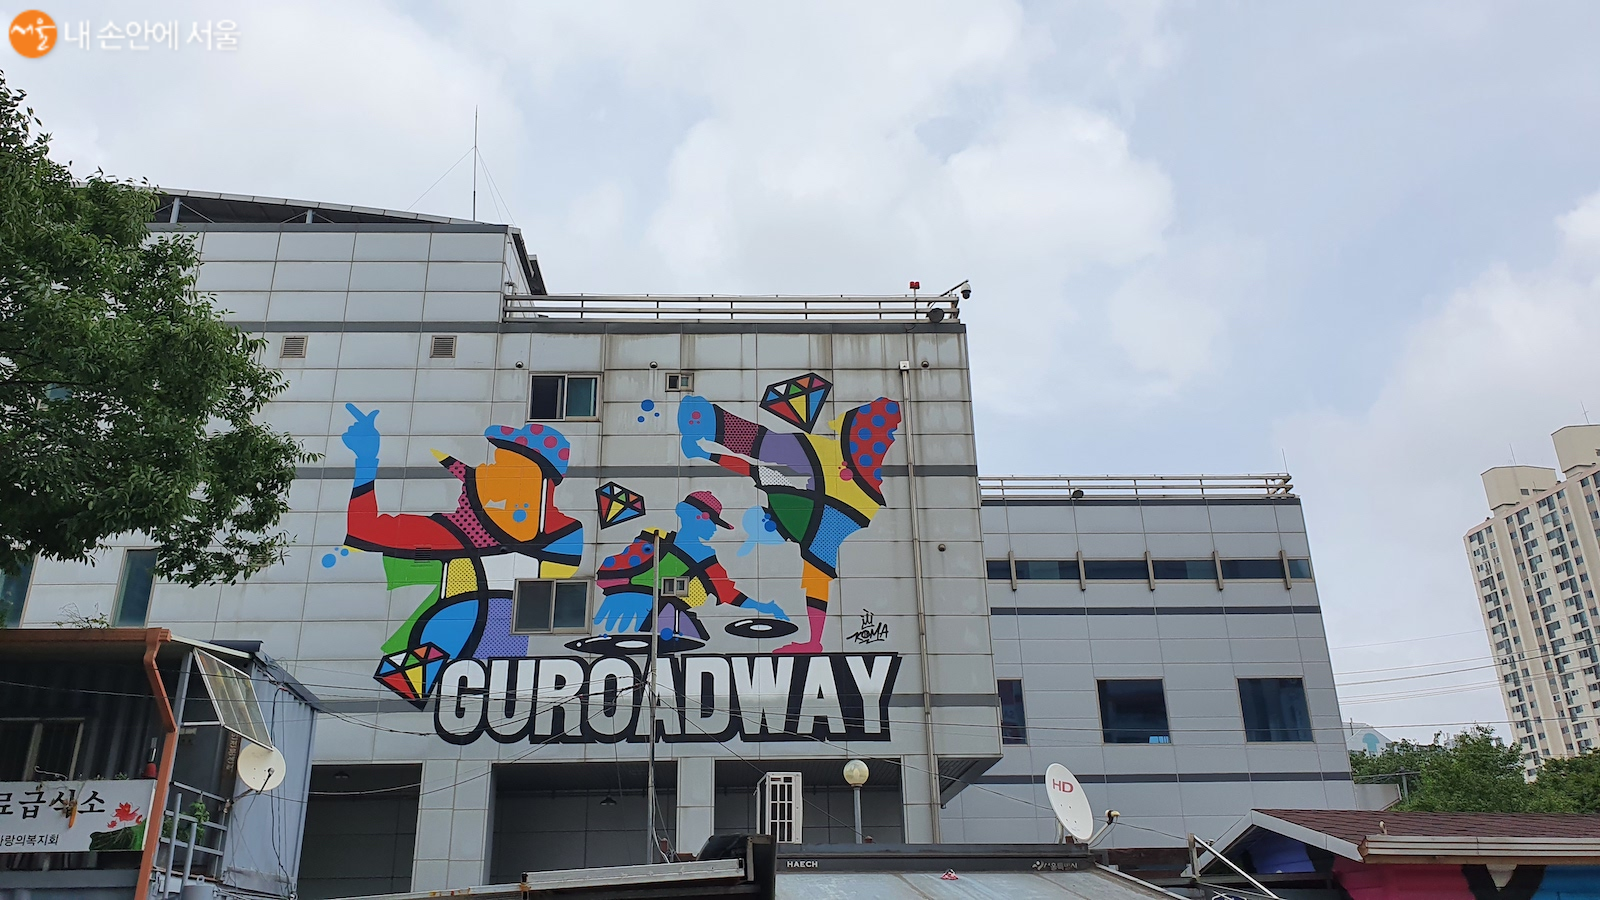 신도림 2번 출구 앞의 한 건물에 구로드웨이 벽화가 있다. 